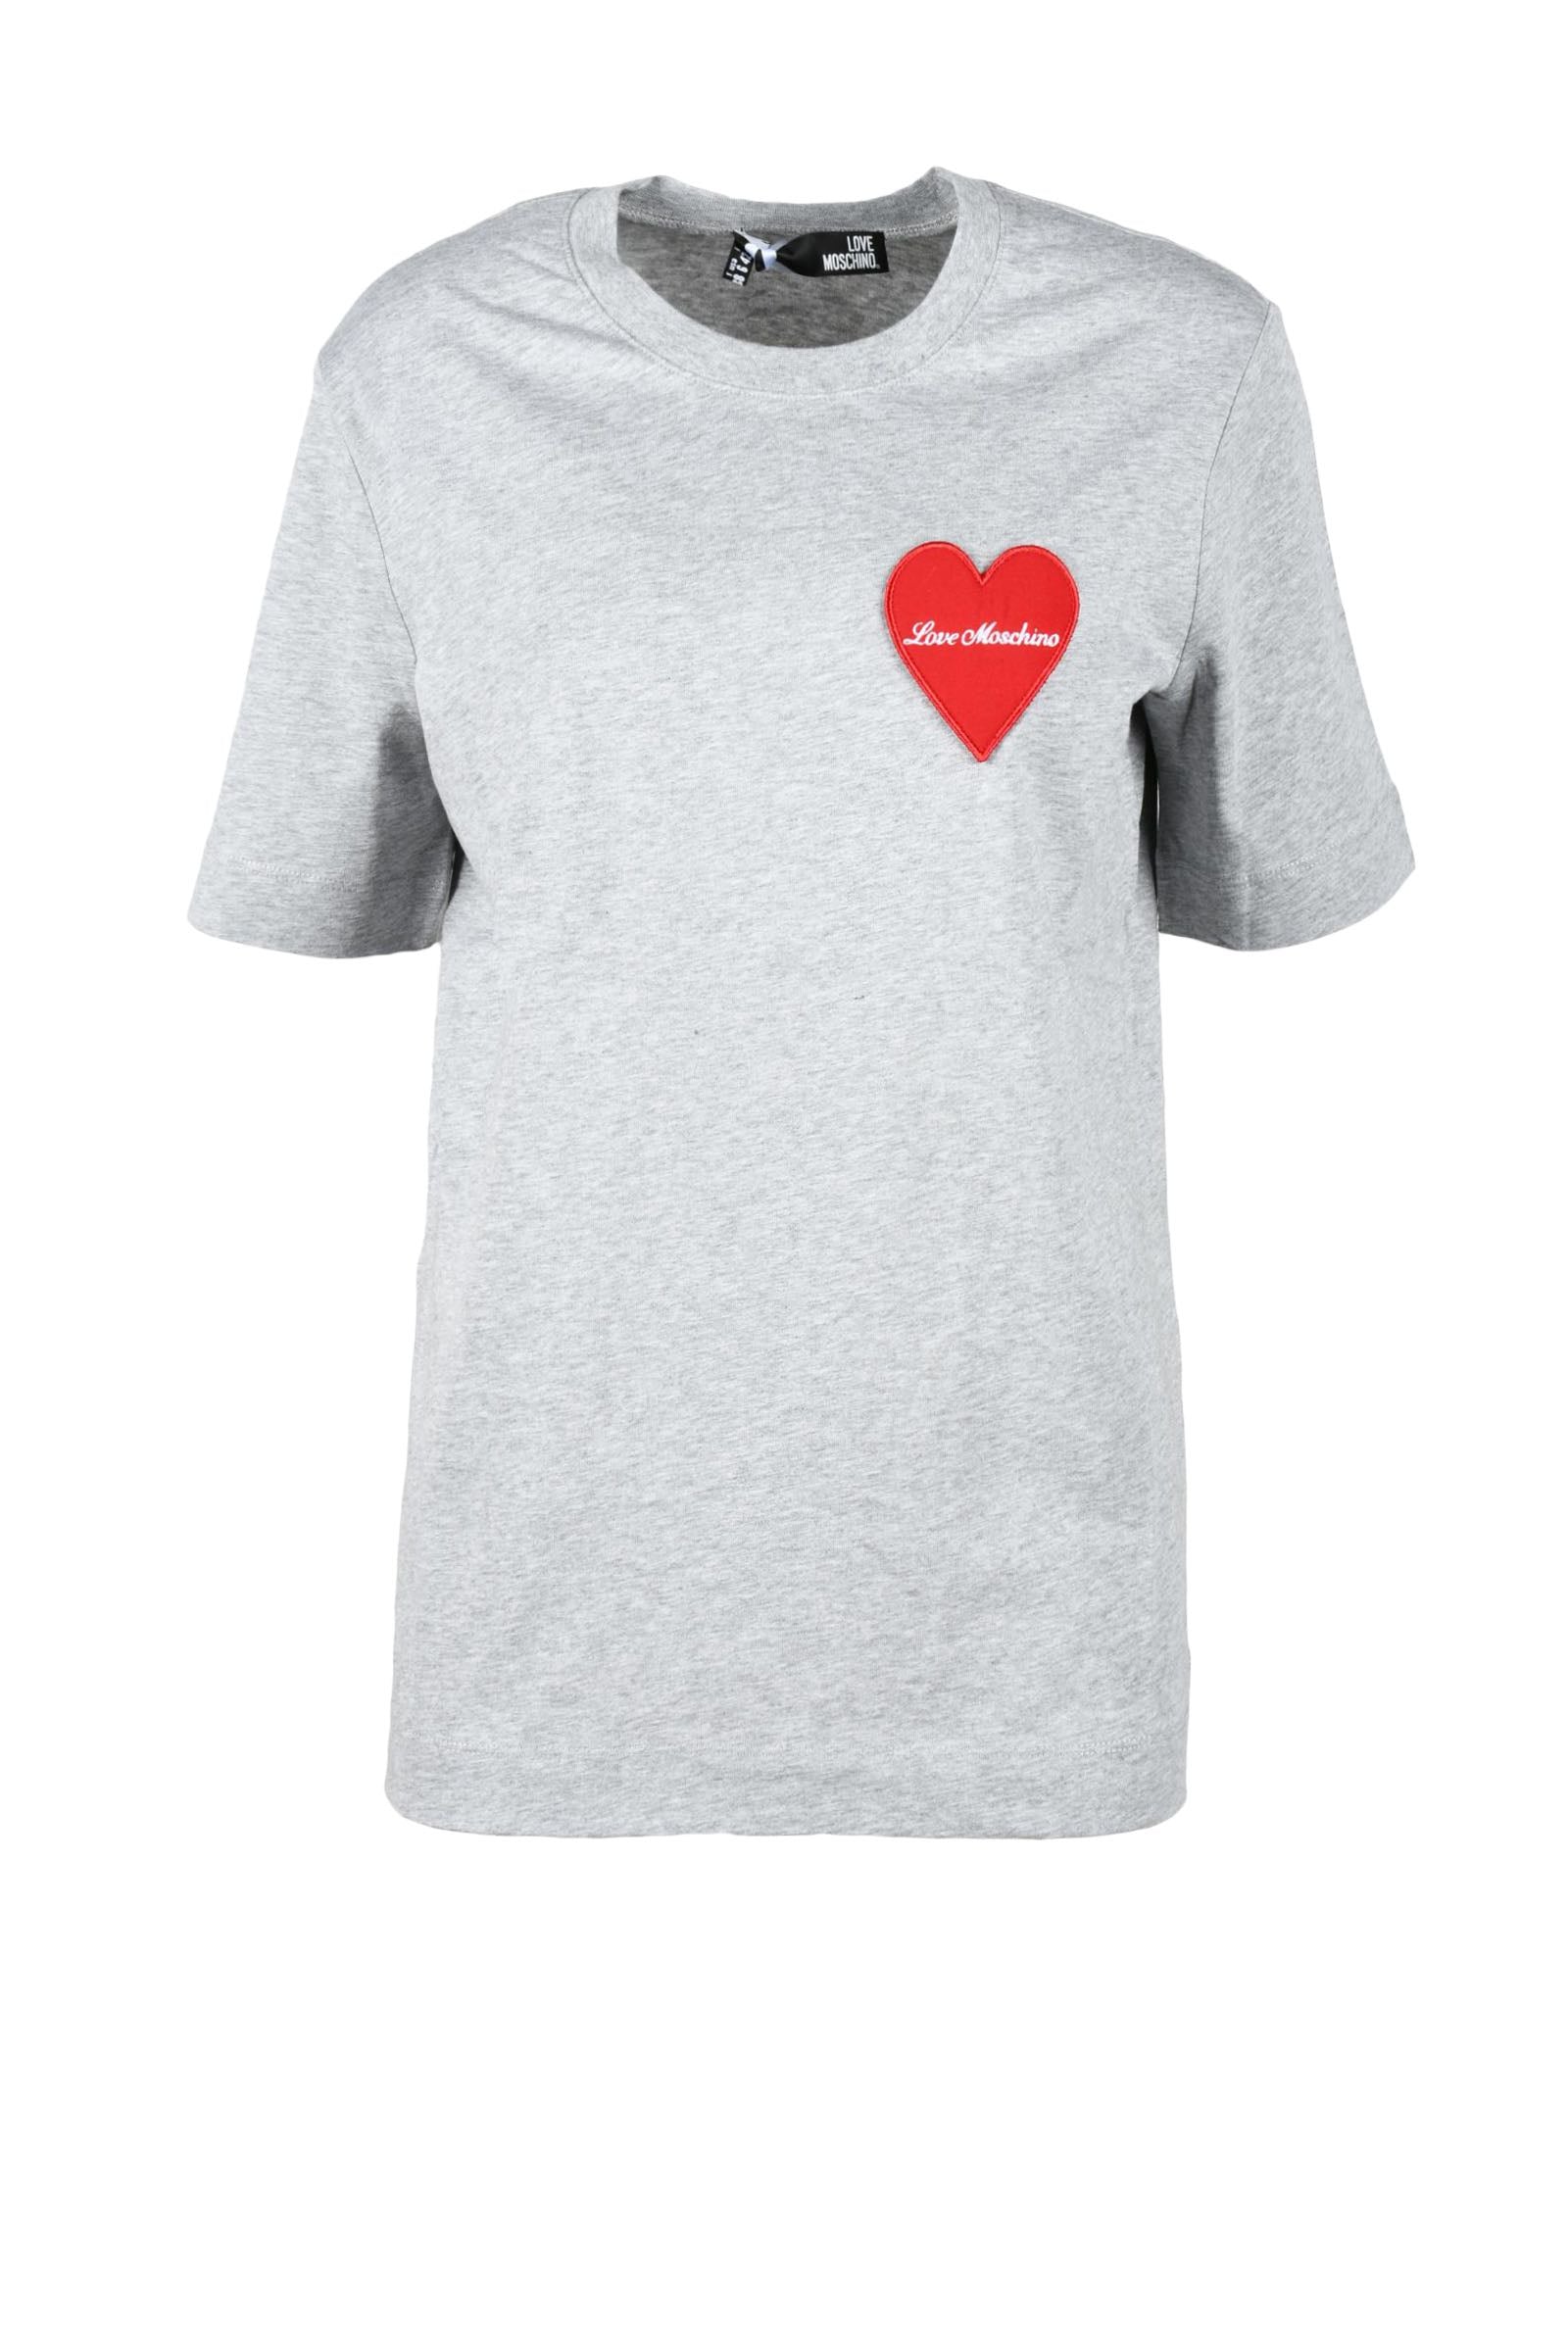 LOVE MOSCHINO T shirt grigia con cuore